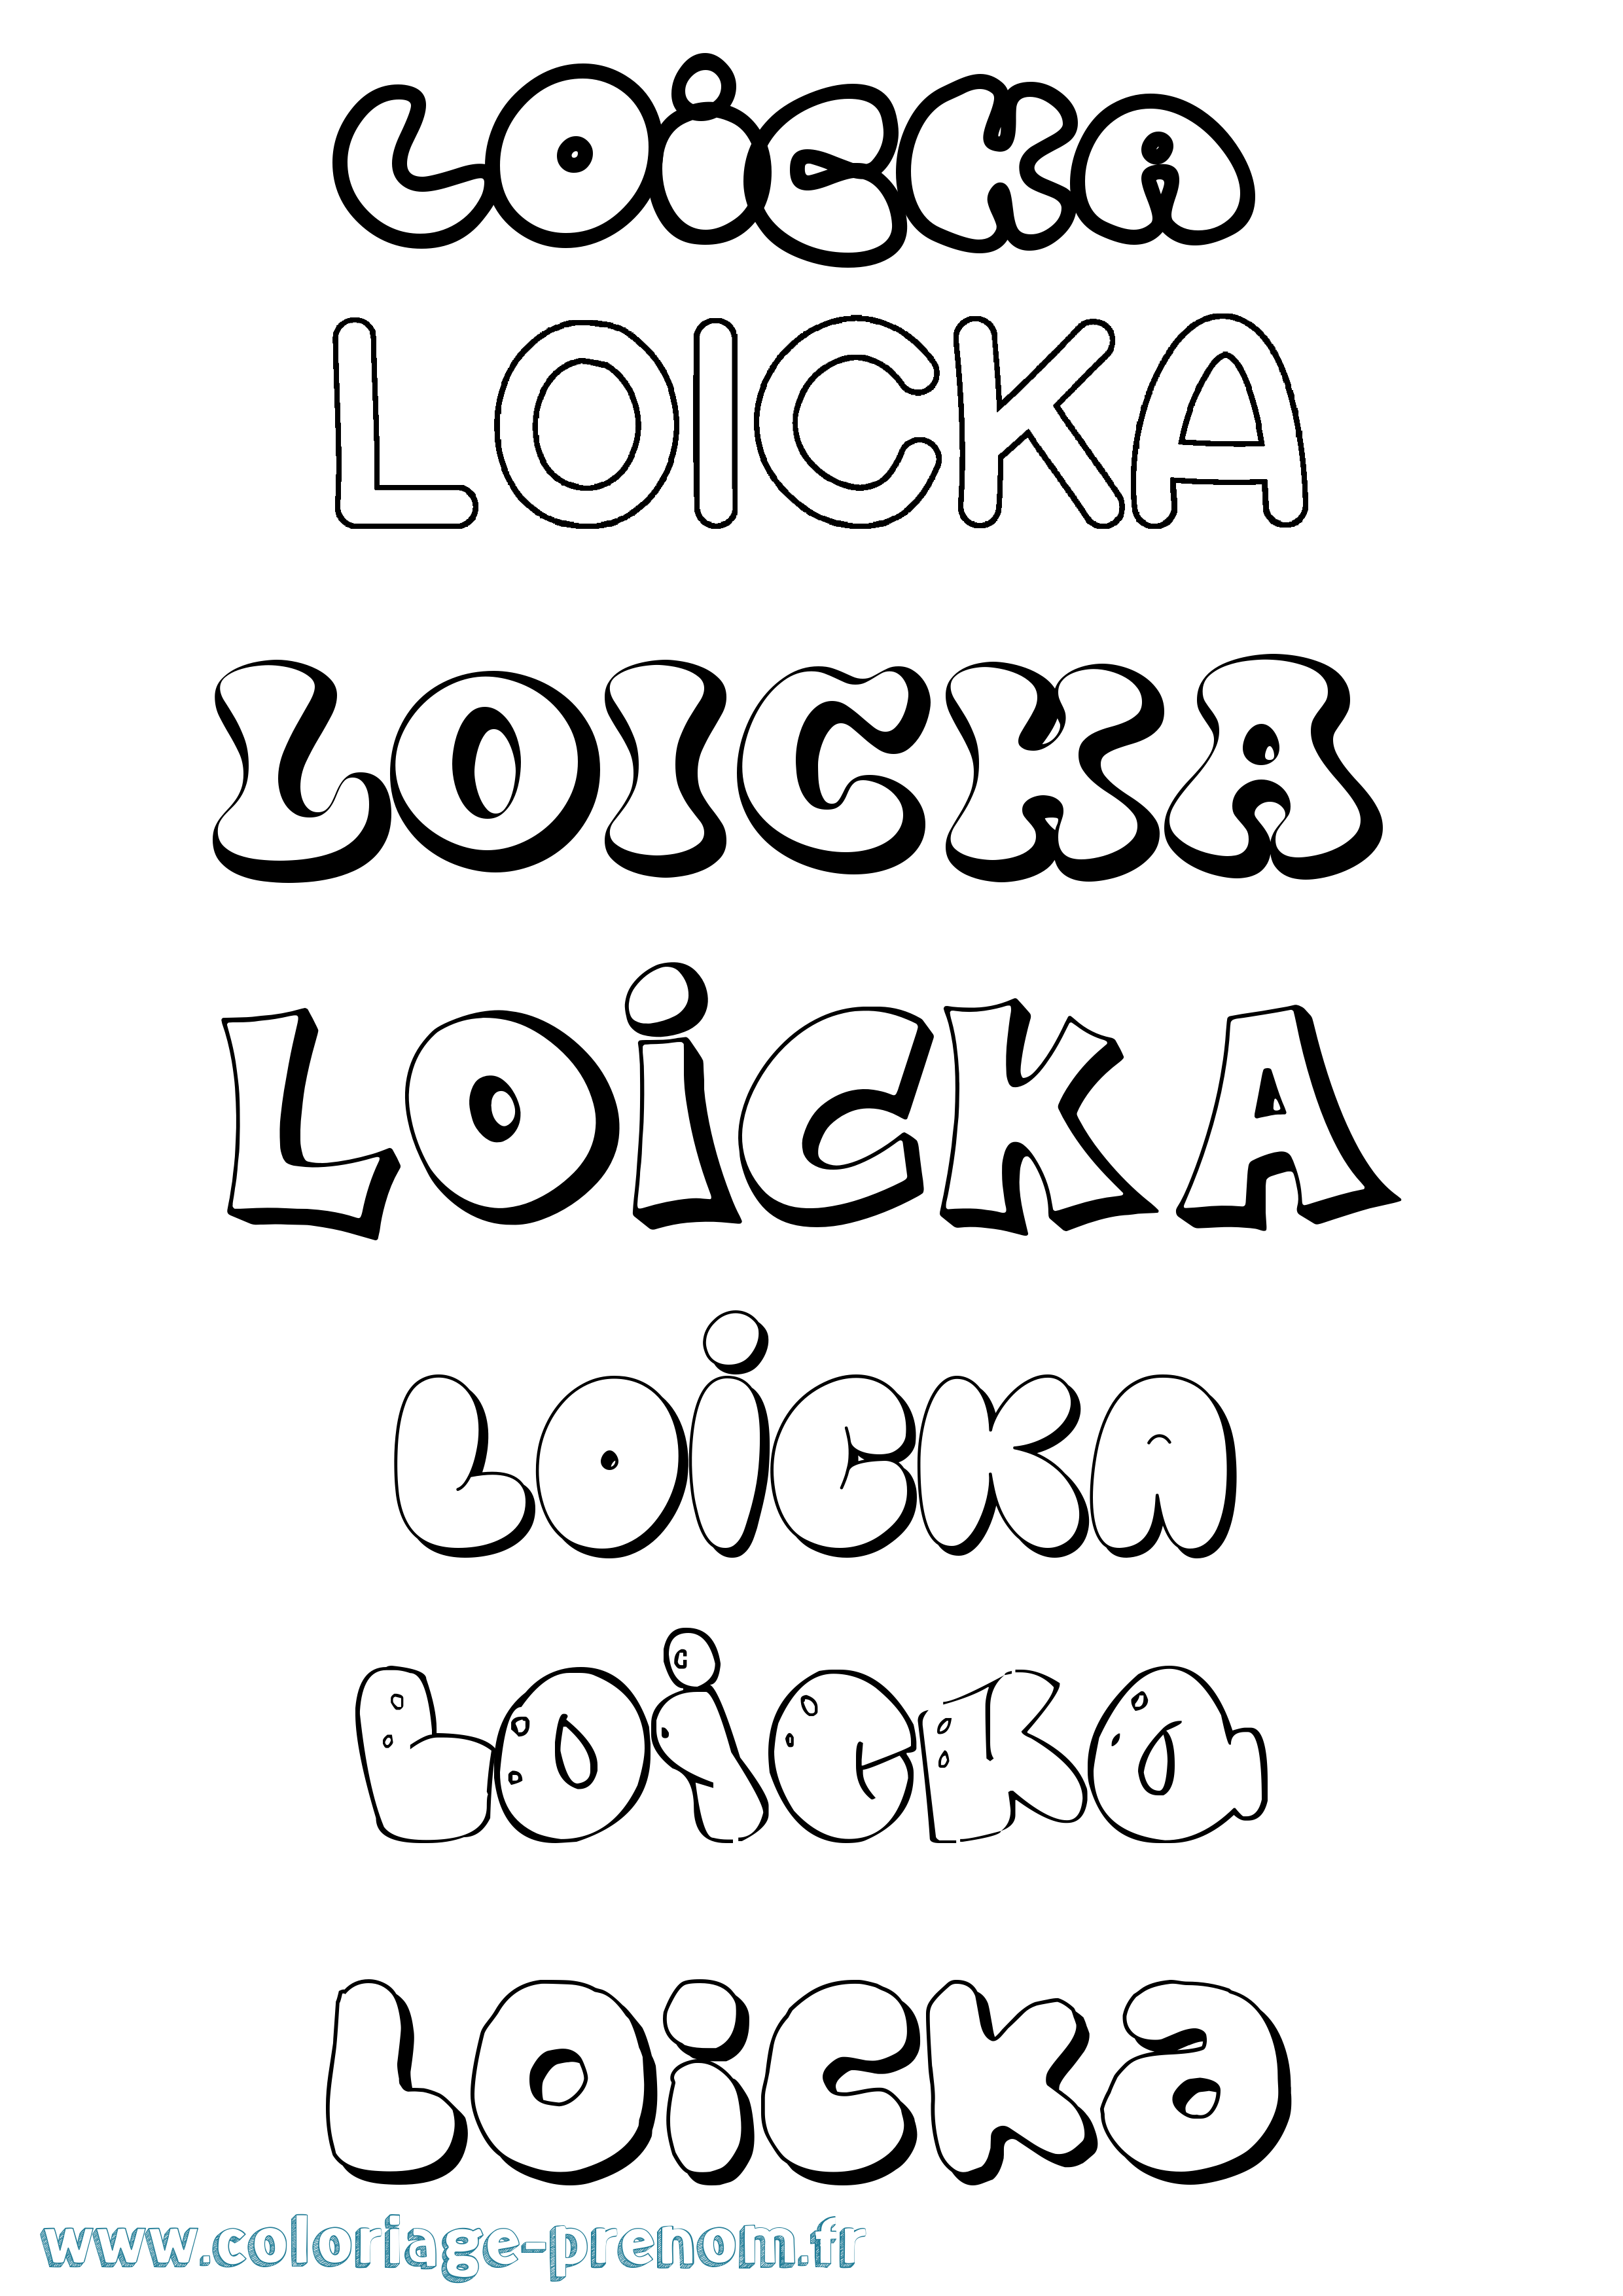 Coloriage prénom Loicka Bubble